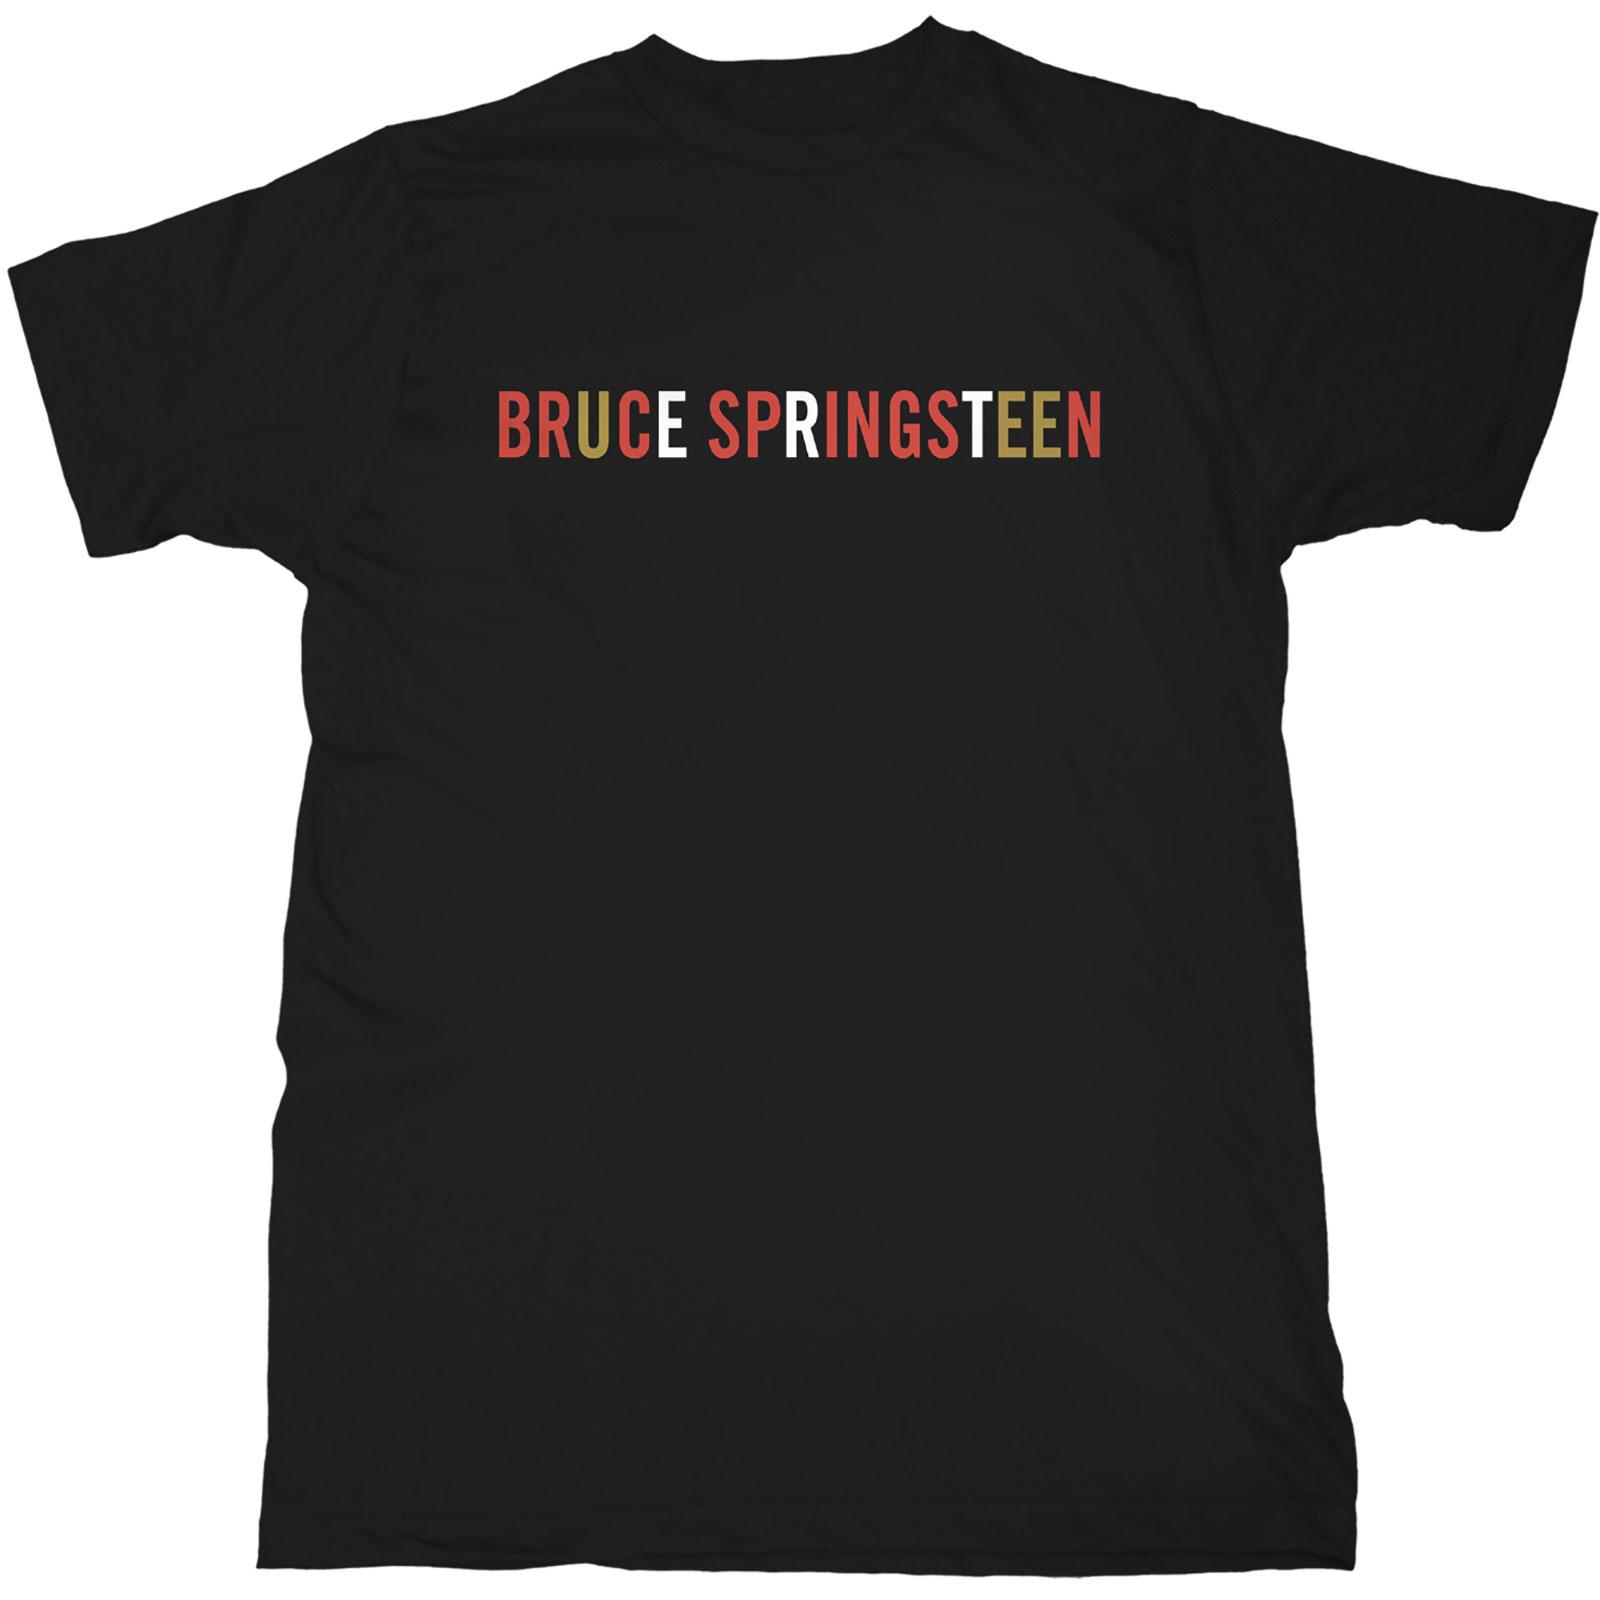 (ブルース・スプリングスティーン) Bruce Springsteen オフィシャル商品 ユニセックス ロゴ Tシャツ 半袖 トップス 【海外通販】